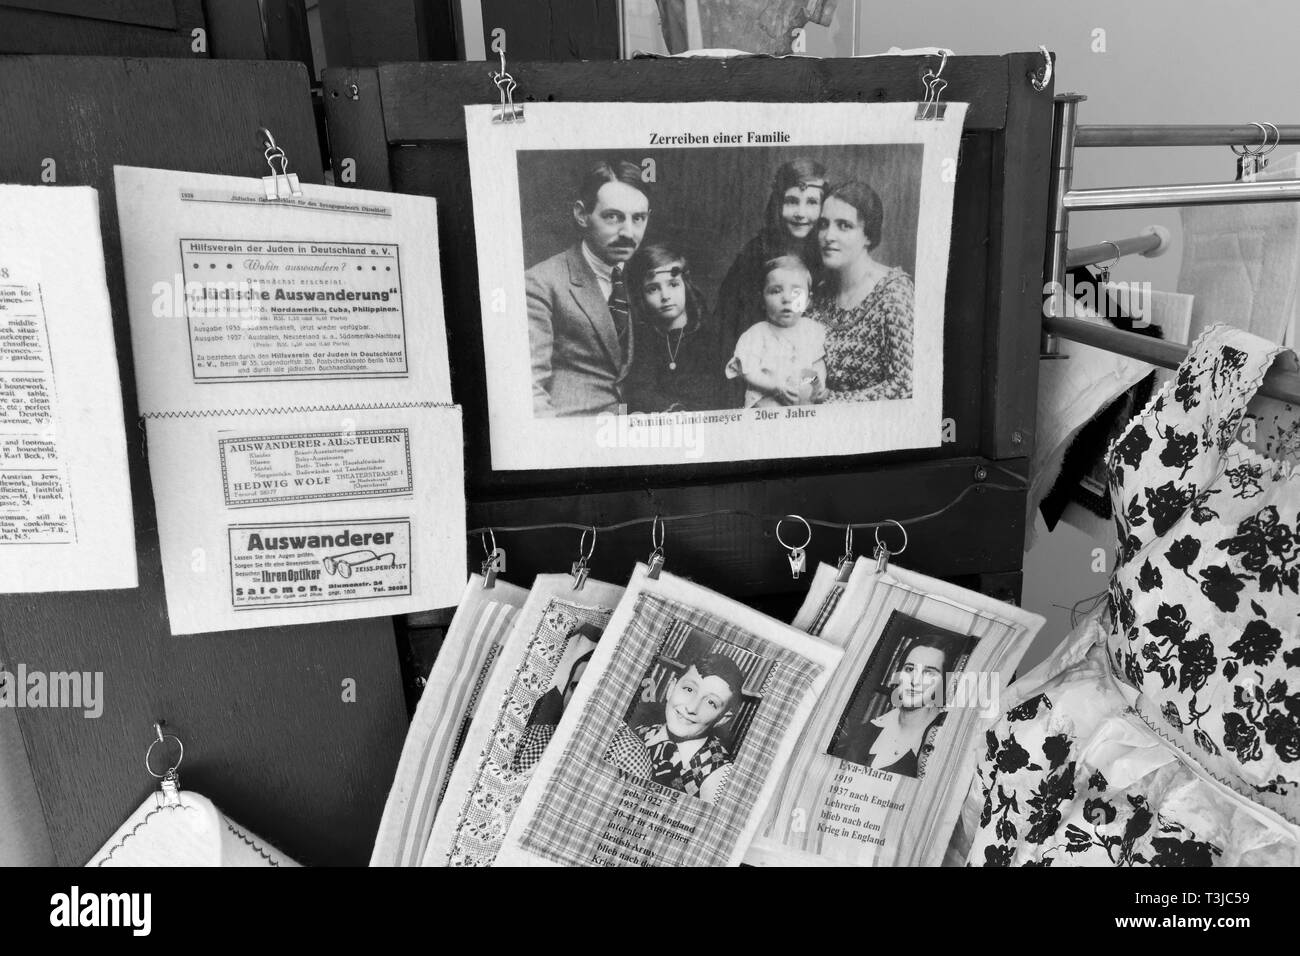 Gli ebrei emigranti 1938, foto di famiglia e annunci, luogo del ricordo Alter Schlachthof, Dusseldorf-Derendorf, Nord Reno-Westfalia, Germania Foto Stock